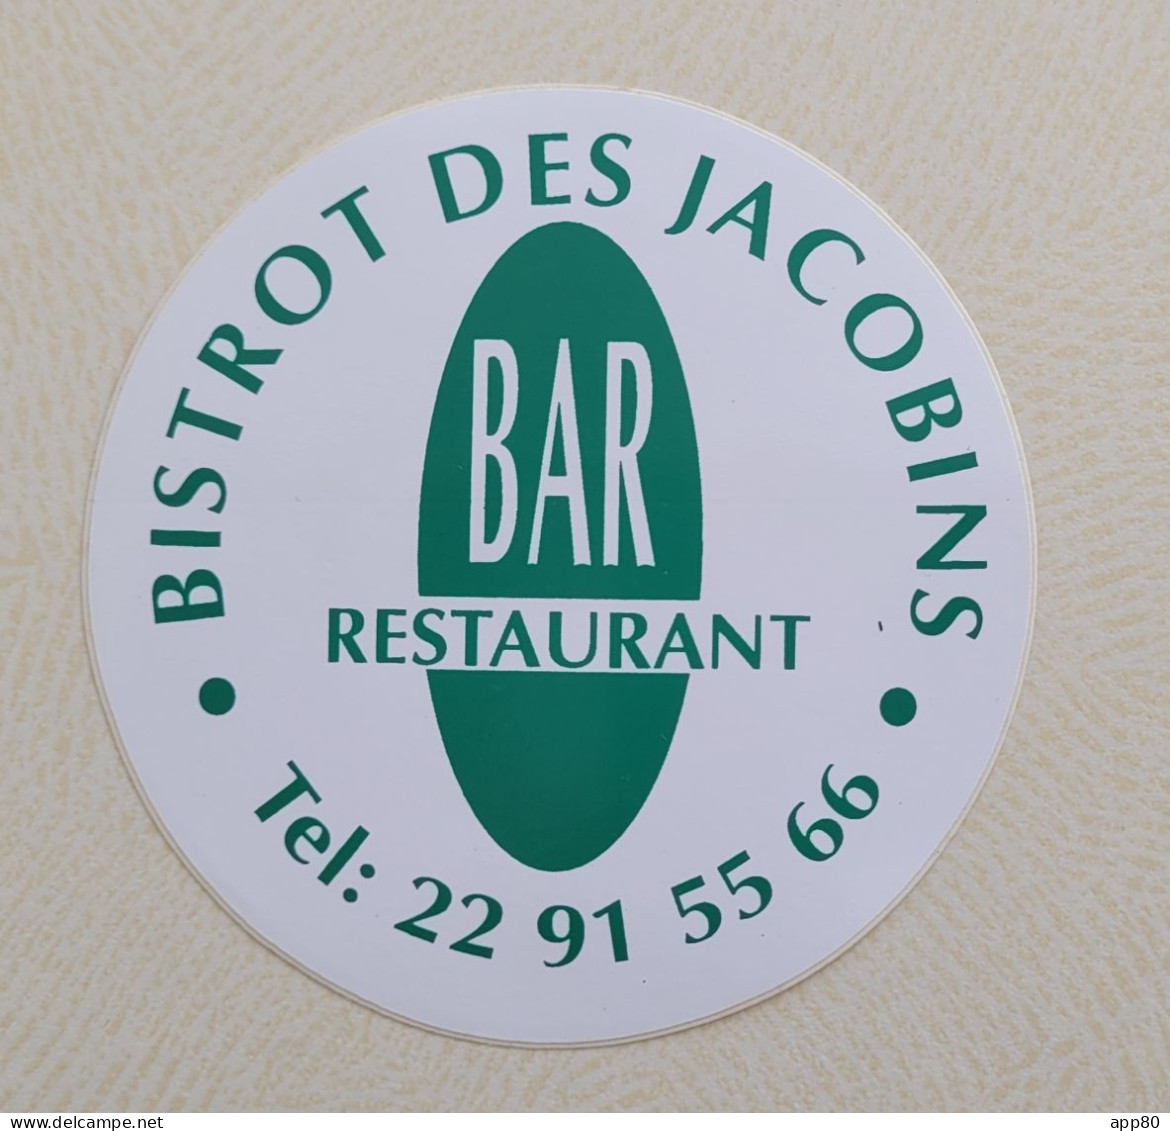 Autocollant Vintage Amiens - Bistrot Des Jacobins Bar Restaurant - Autocollants